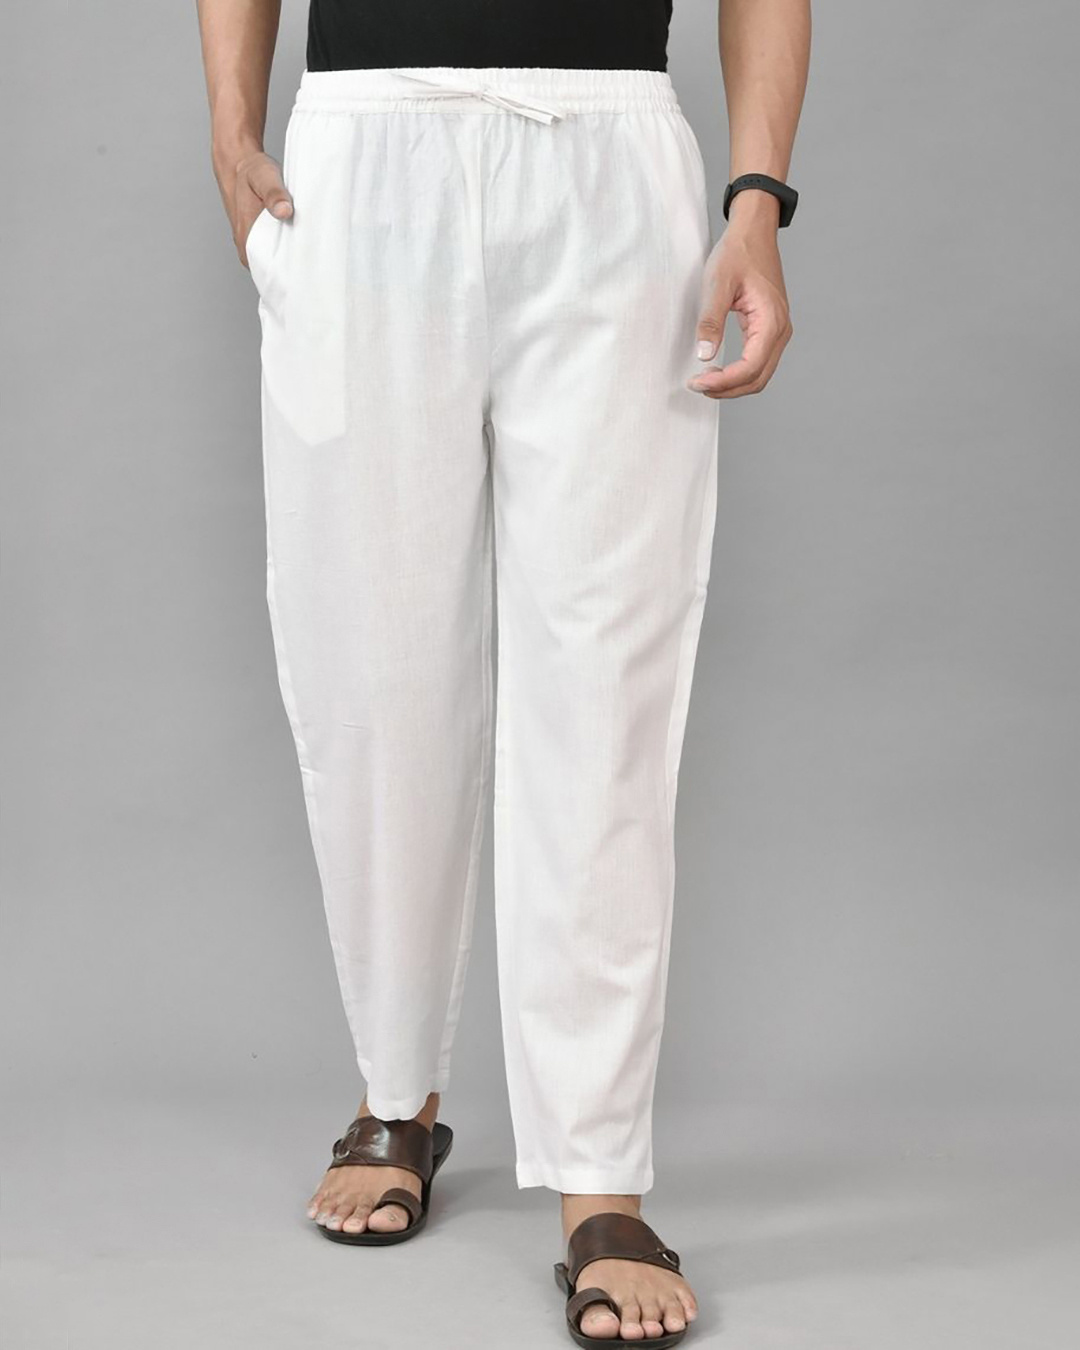 Buy Men's White Casual Pants Online at Bewakoof